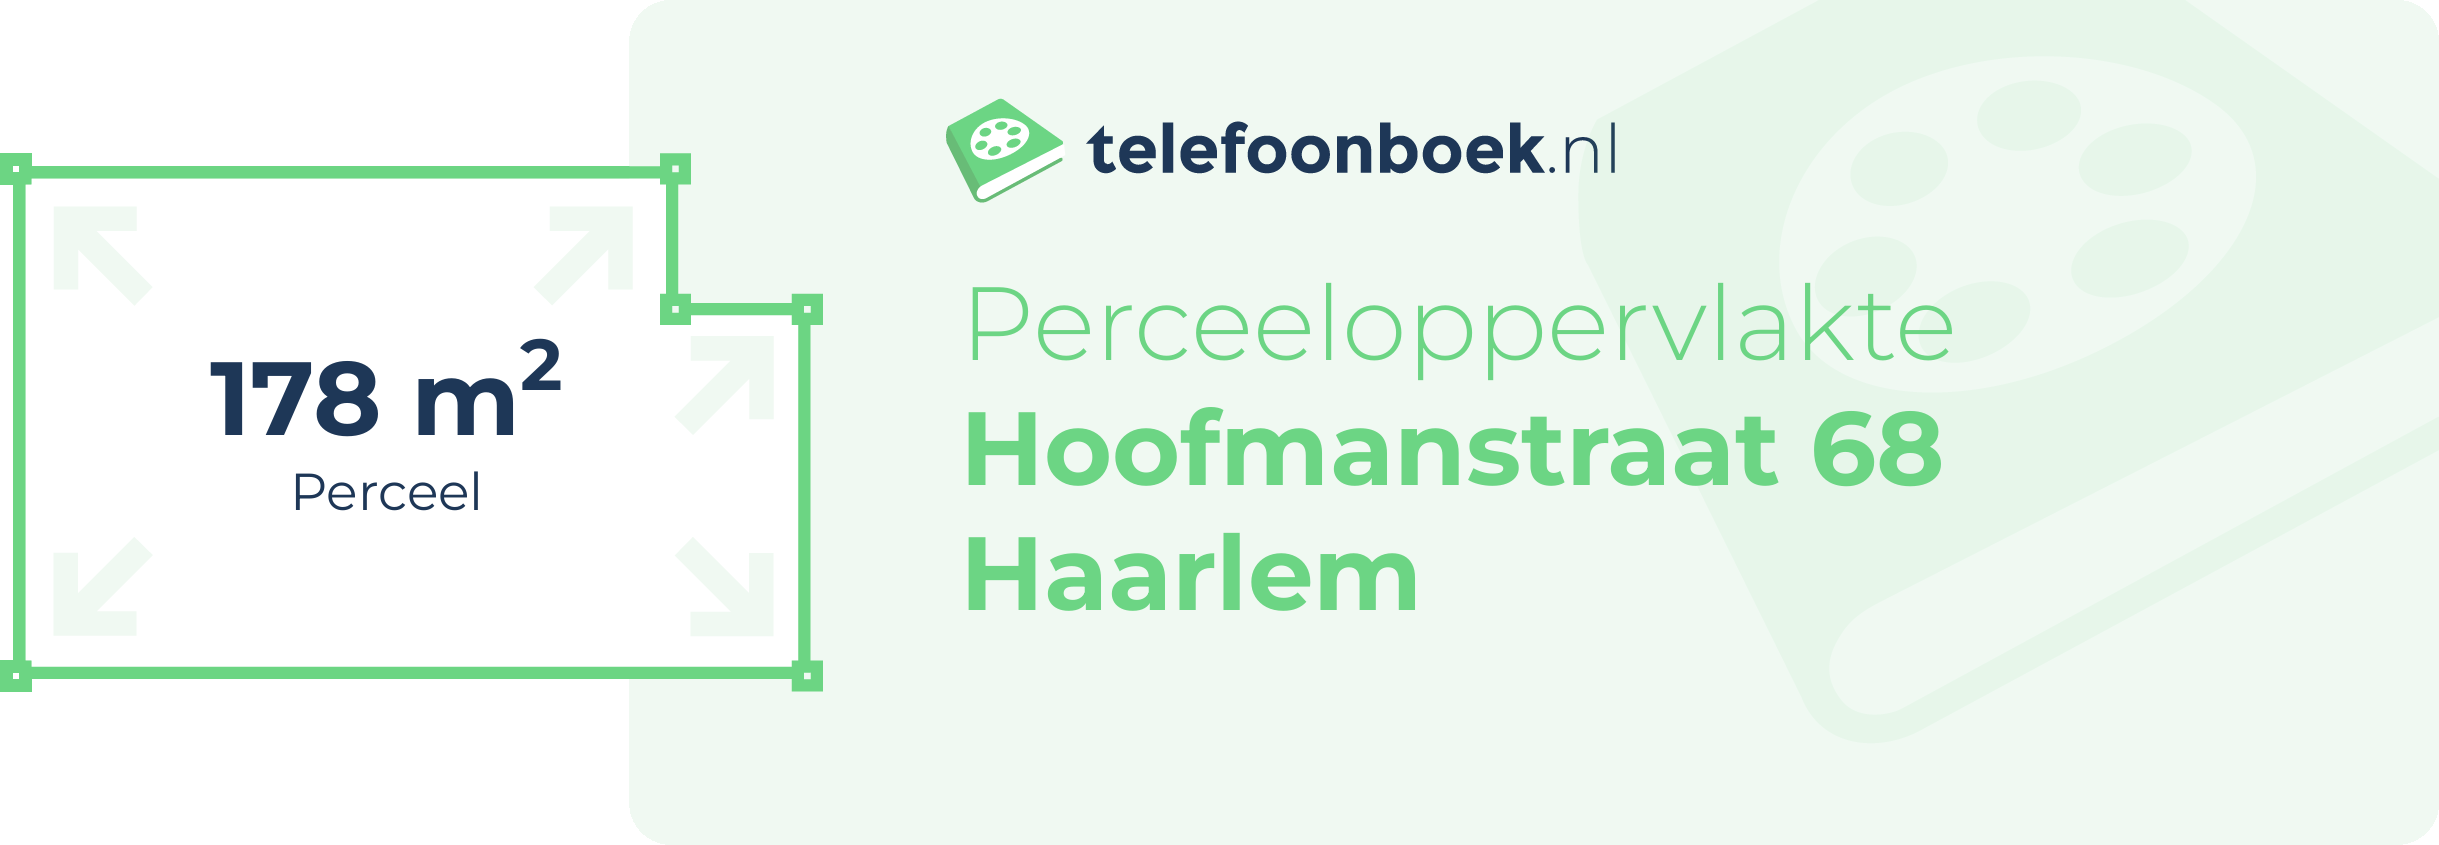 Perceeloppervlakte Hoofmanstraat 68 Haarlem